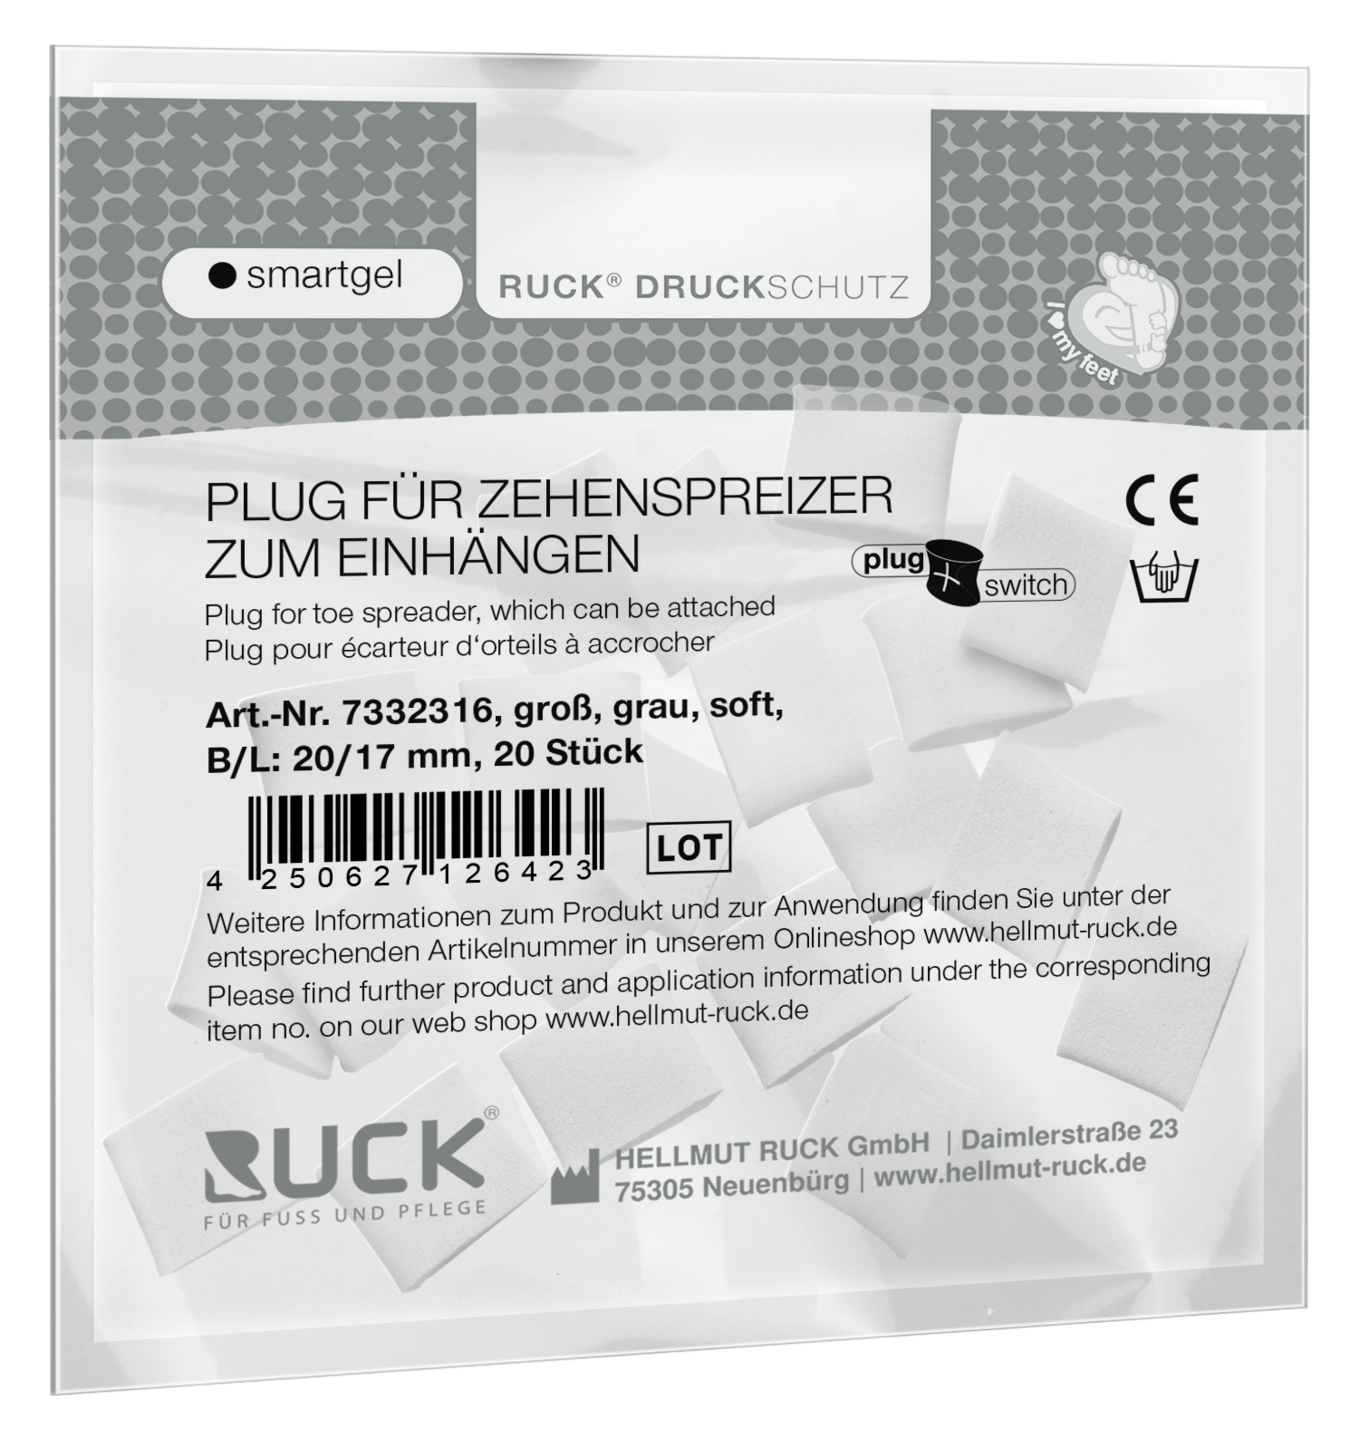 RUCK DRUCKSCHUTZ - Plugs für RUCK® DRUCKSCHUTZ smartgel plug+switch Zehenspreizer zum Einhängen in grau